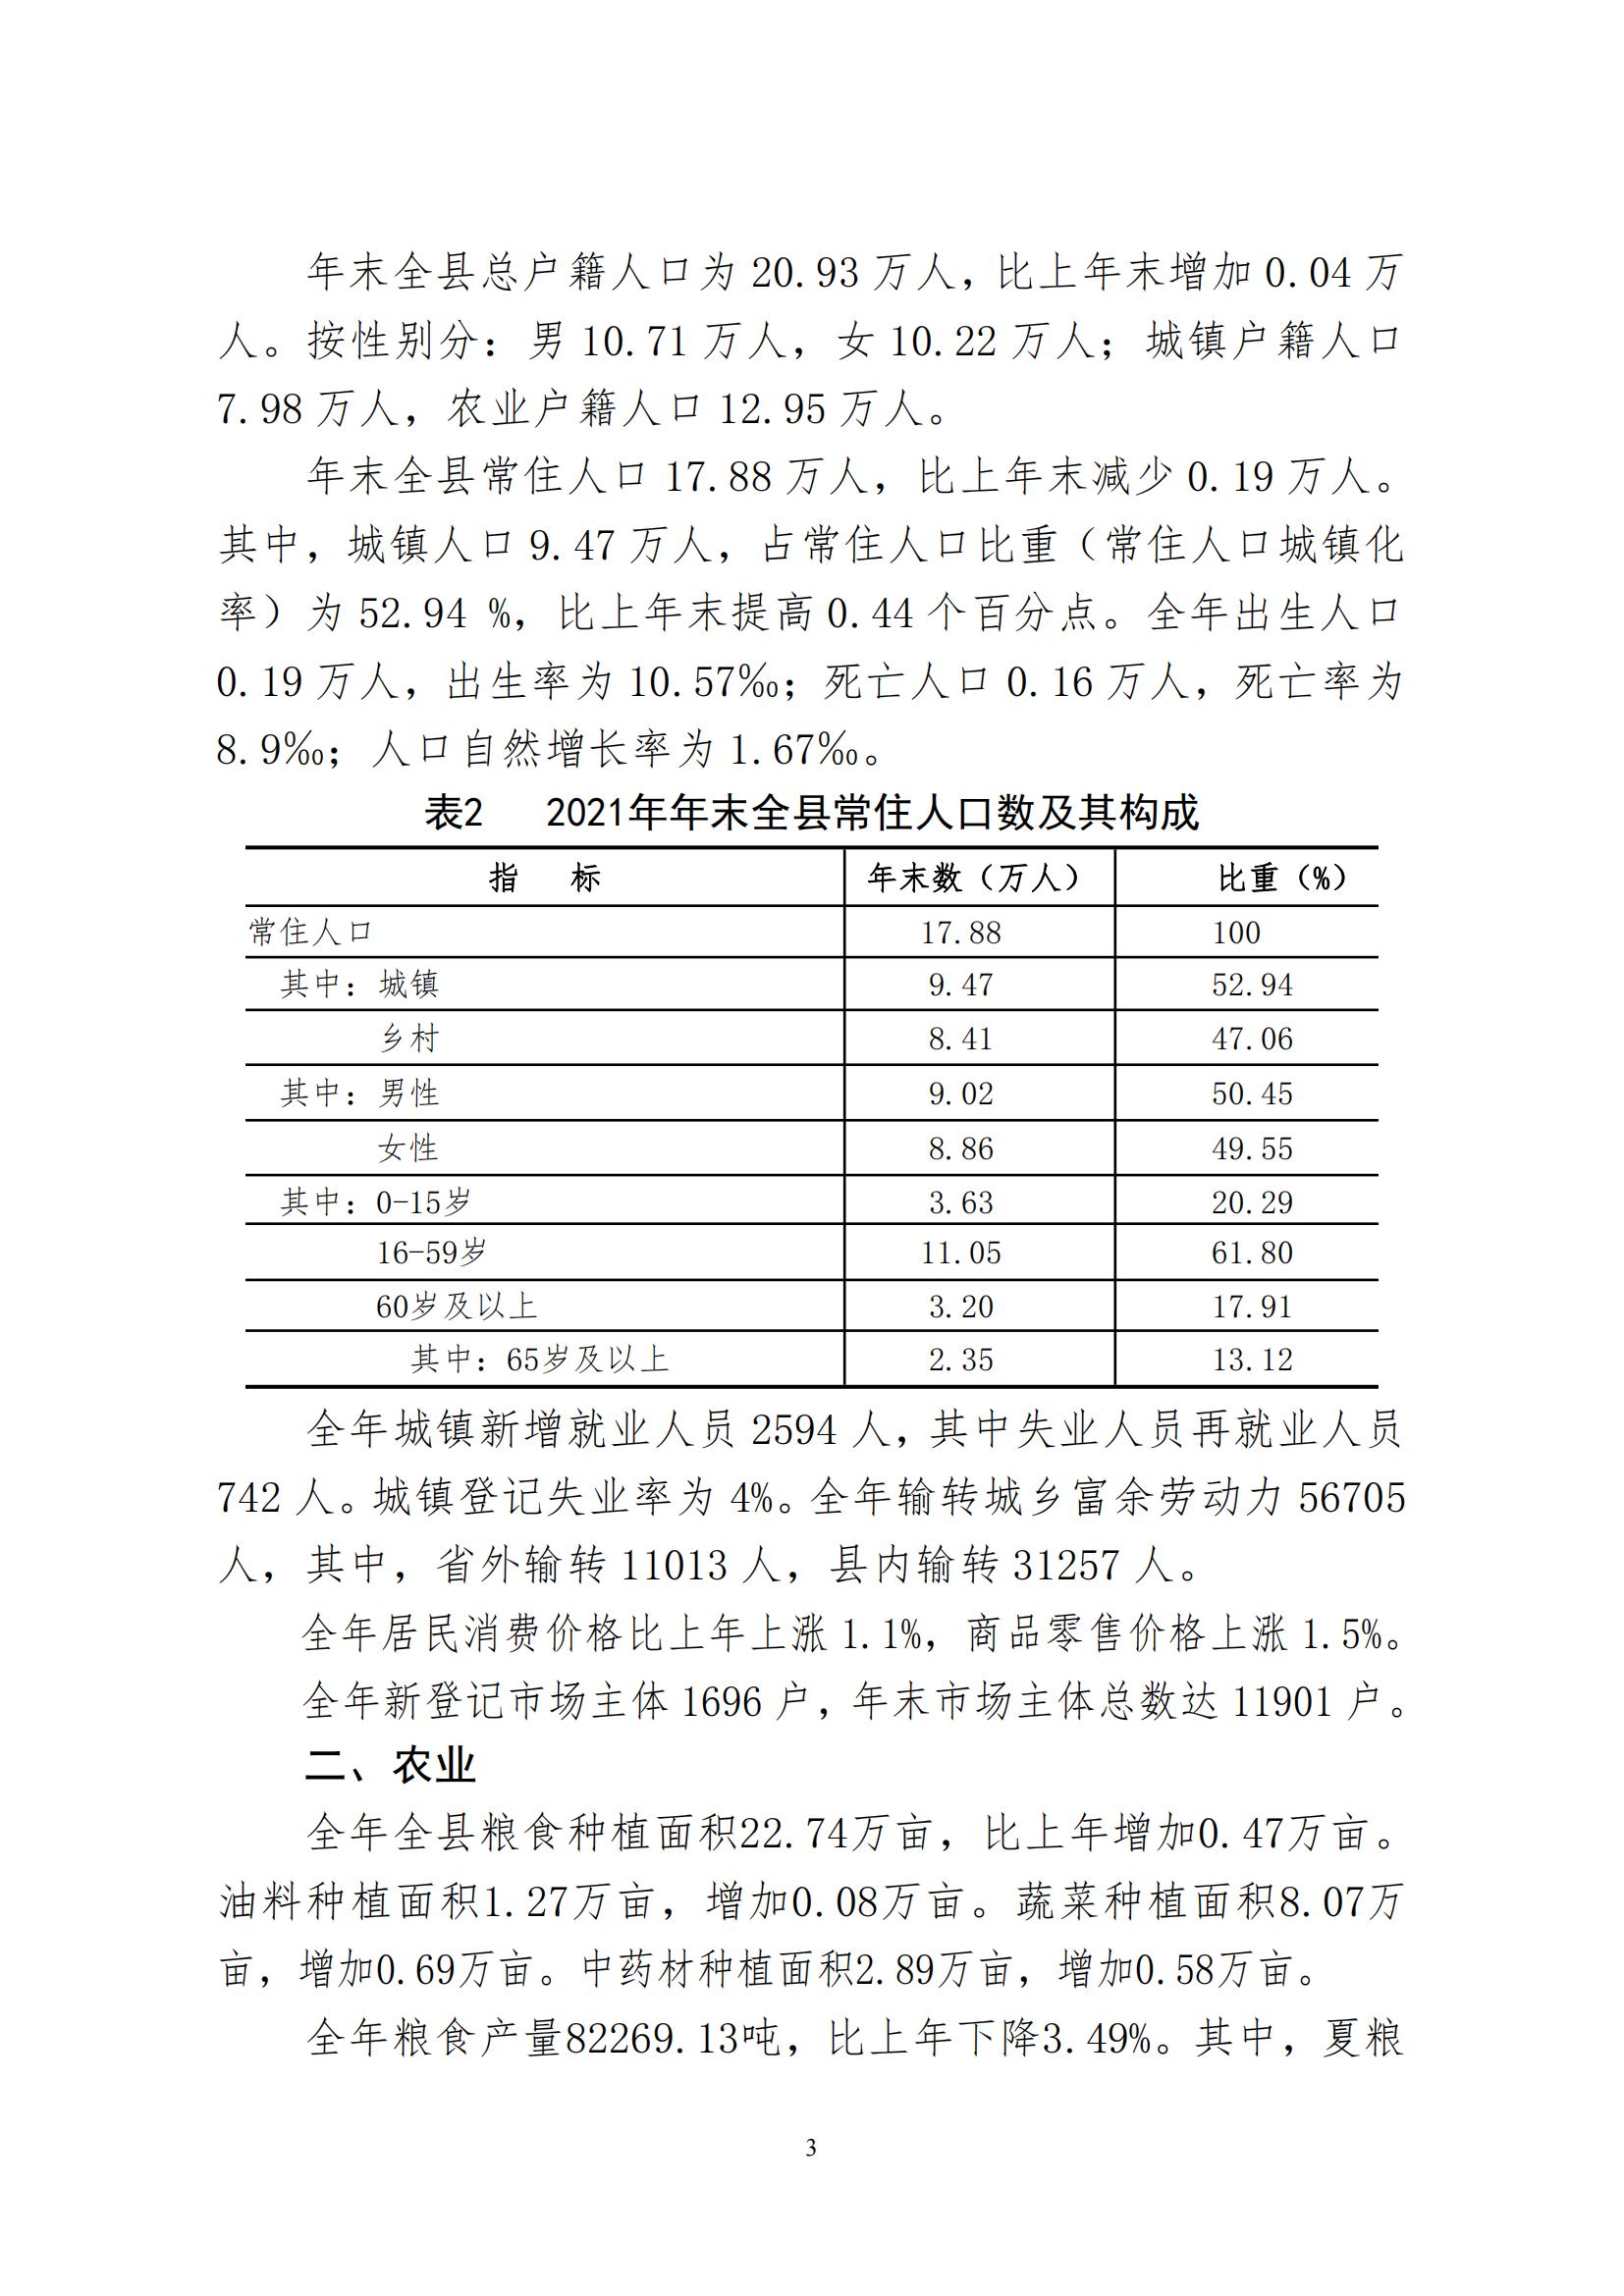 2021年永靖县国民经济和社会发展统计公报_02.jpg